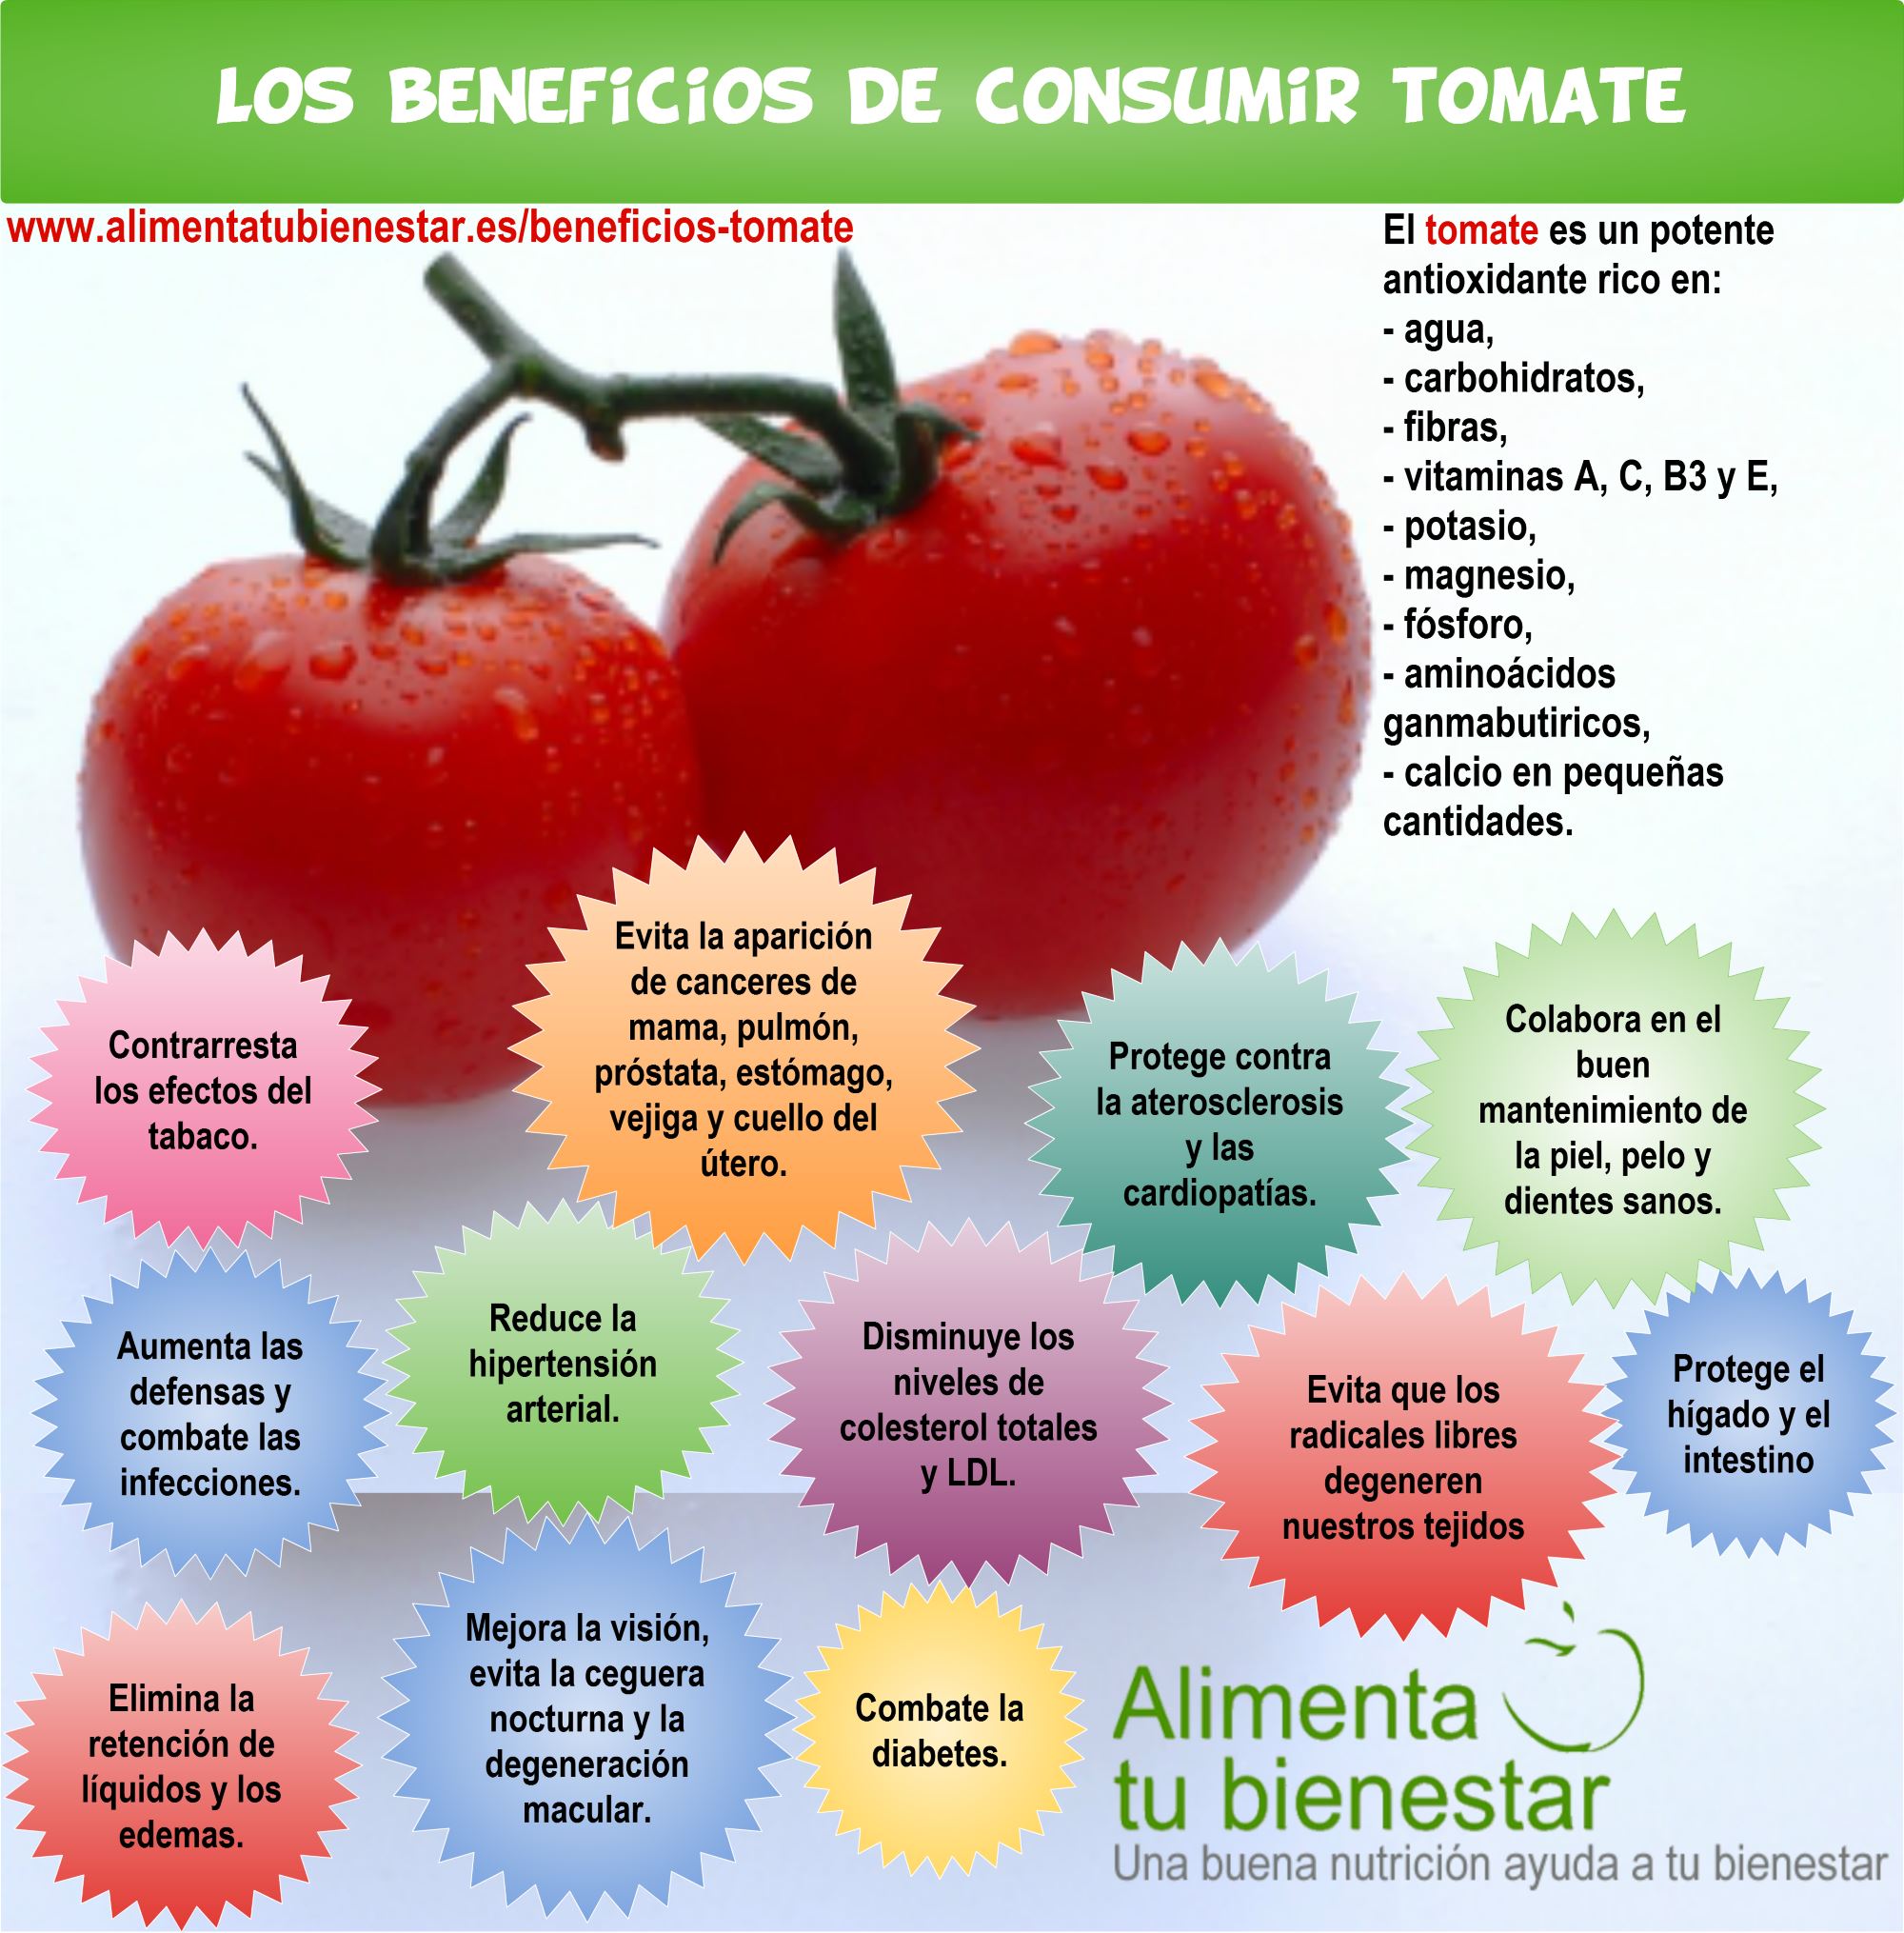 Los beneficios del tomate para la salud